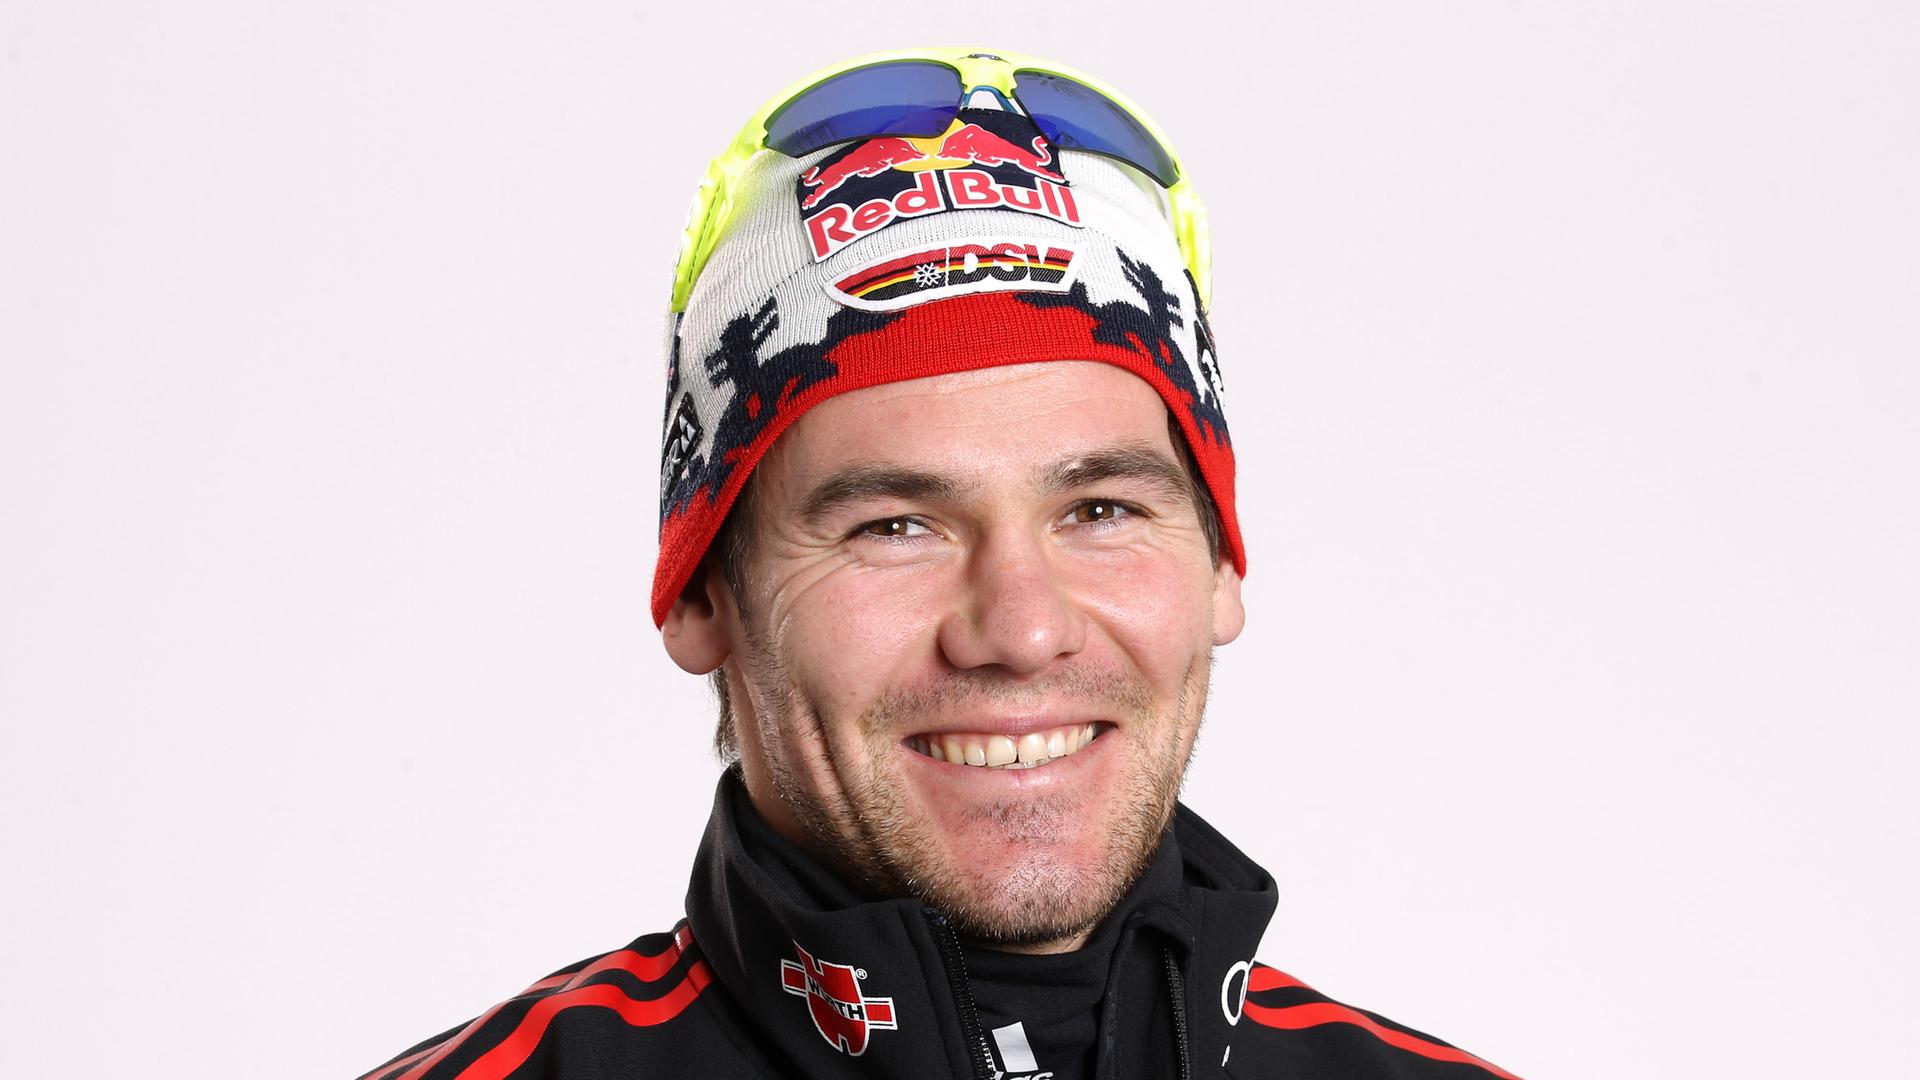 Der Biathlet Michael Rösch,aufgenommen am 27.10.2010 beim Fototermin des DSV ( Deutscher Skiverband) während der Einkleidung für die Wettkampfsaison 2010/2011 in Ingolstadt